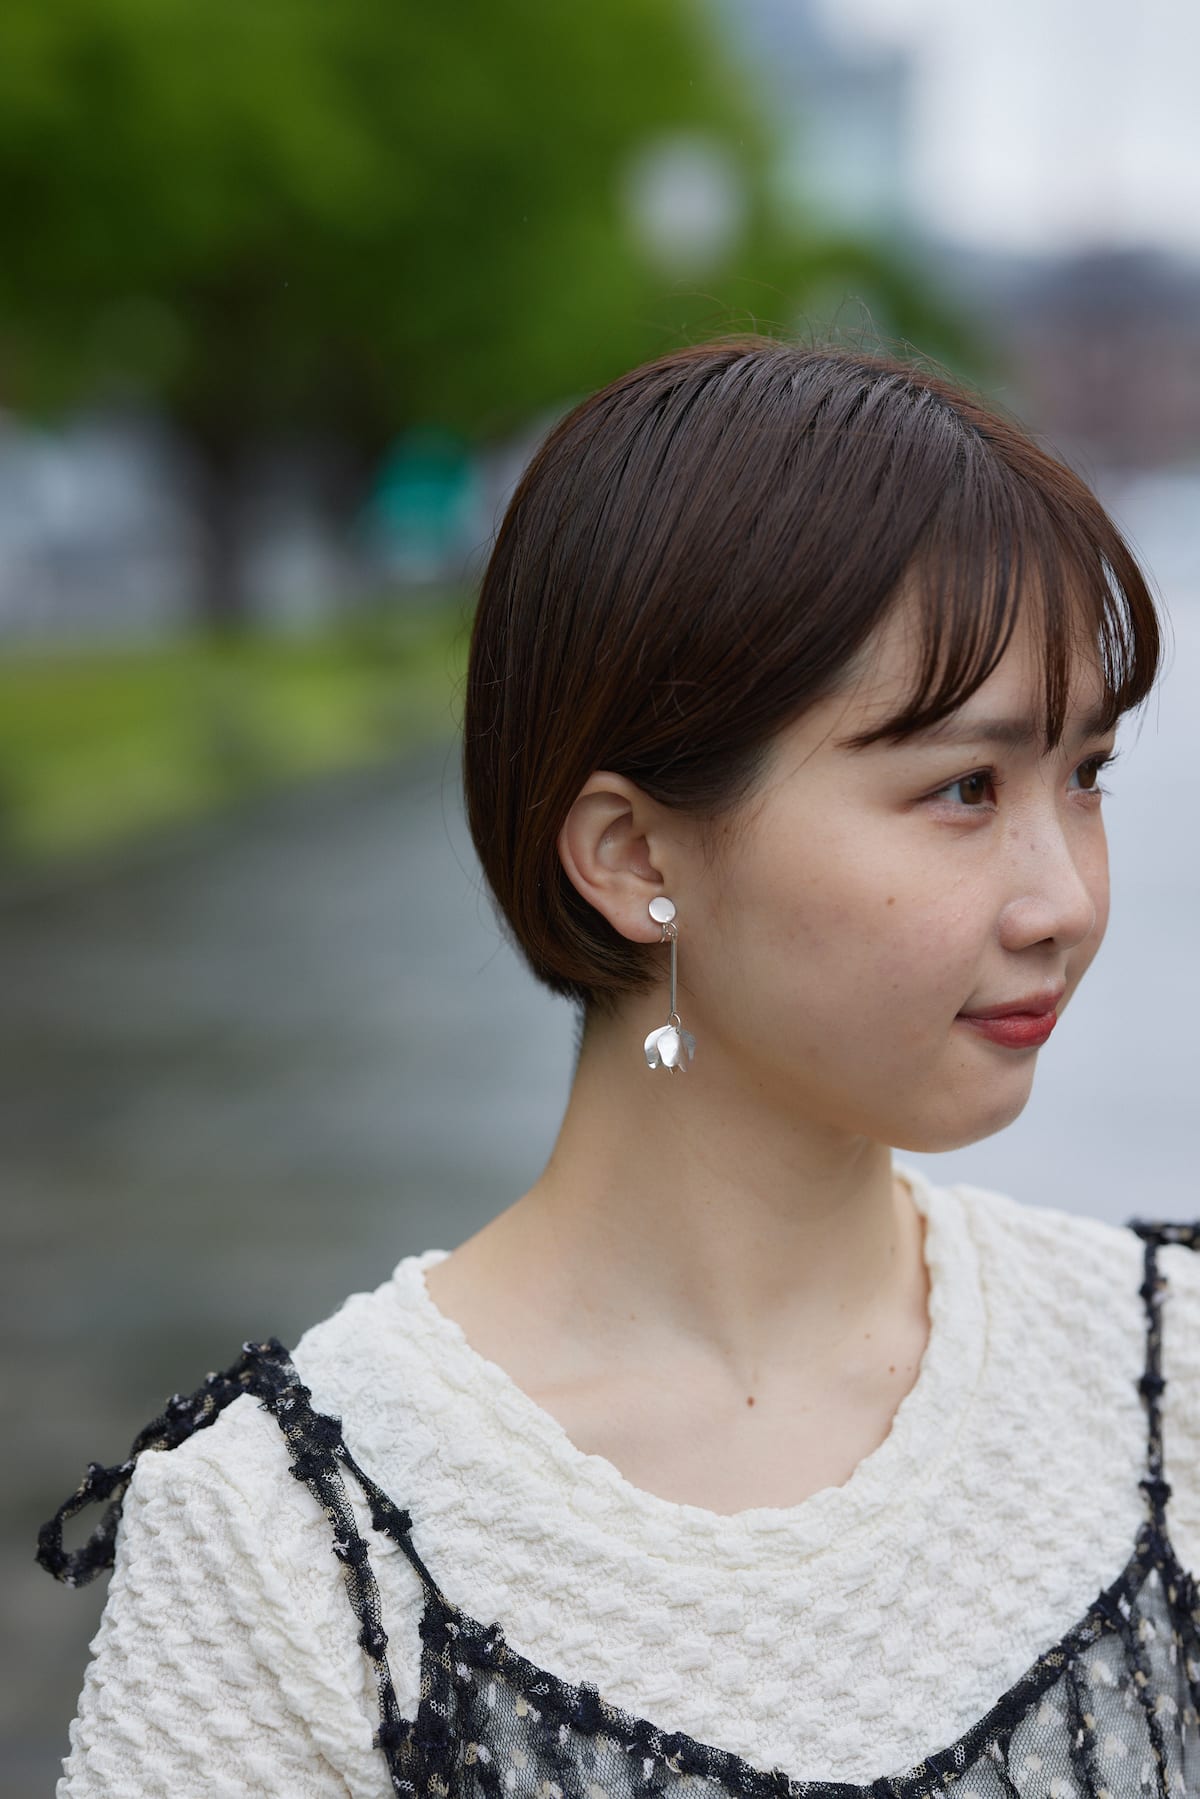 petal pierce/earring